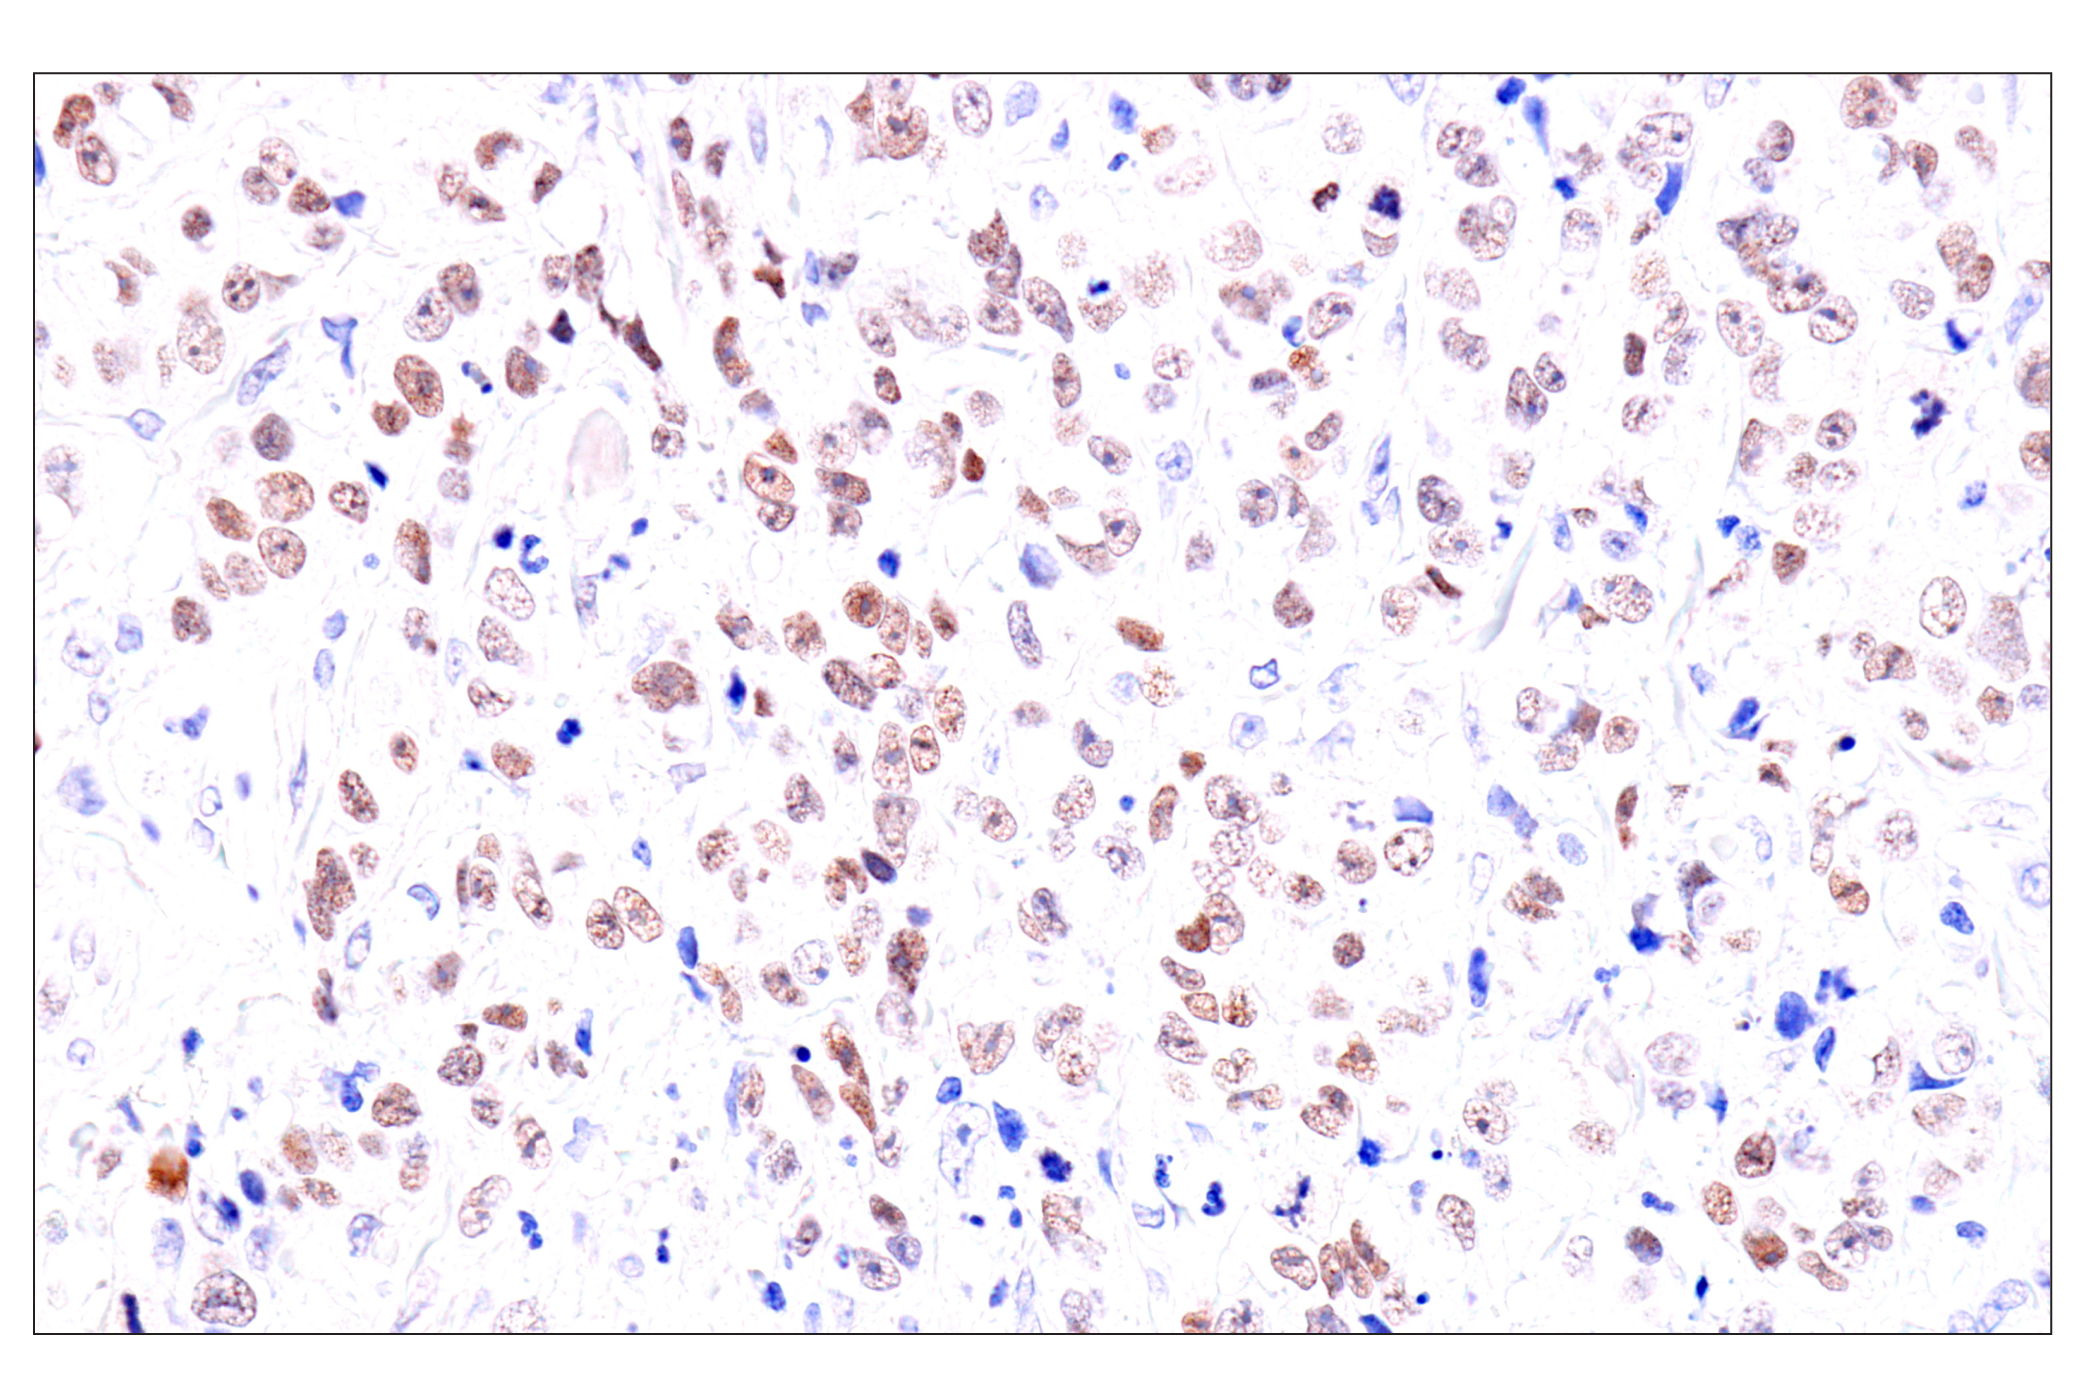  Image 45: GATA Transcription Factor Antibody Sampler Kit